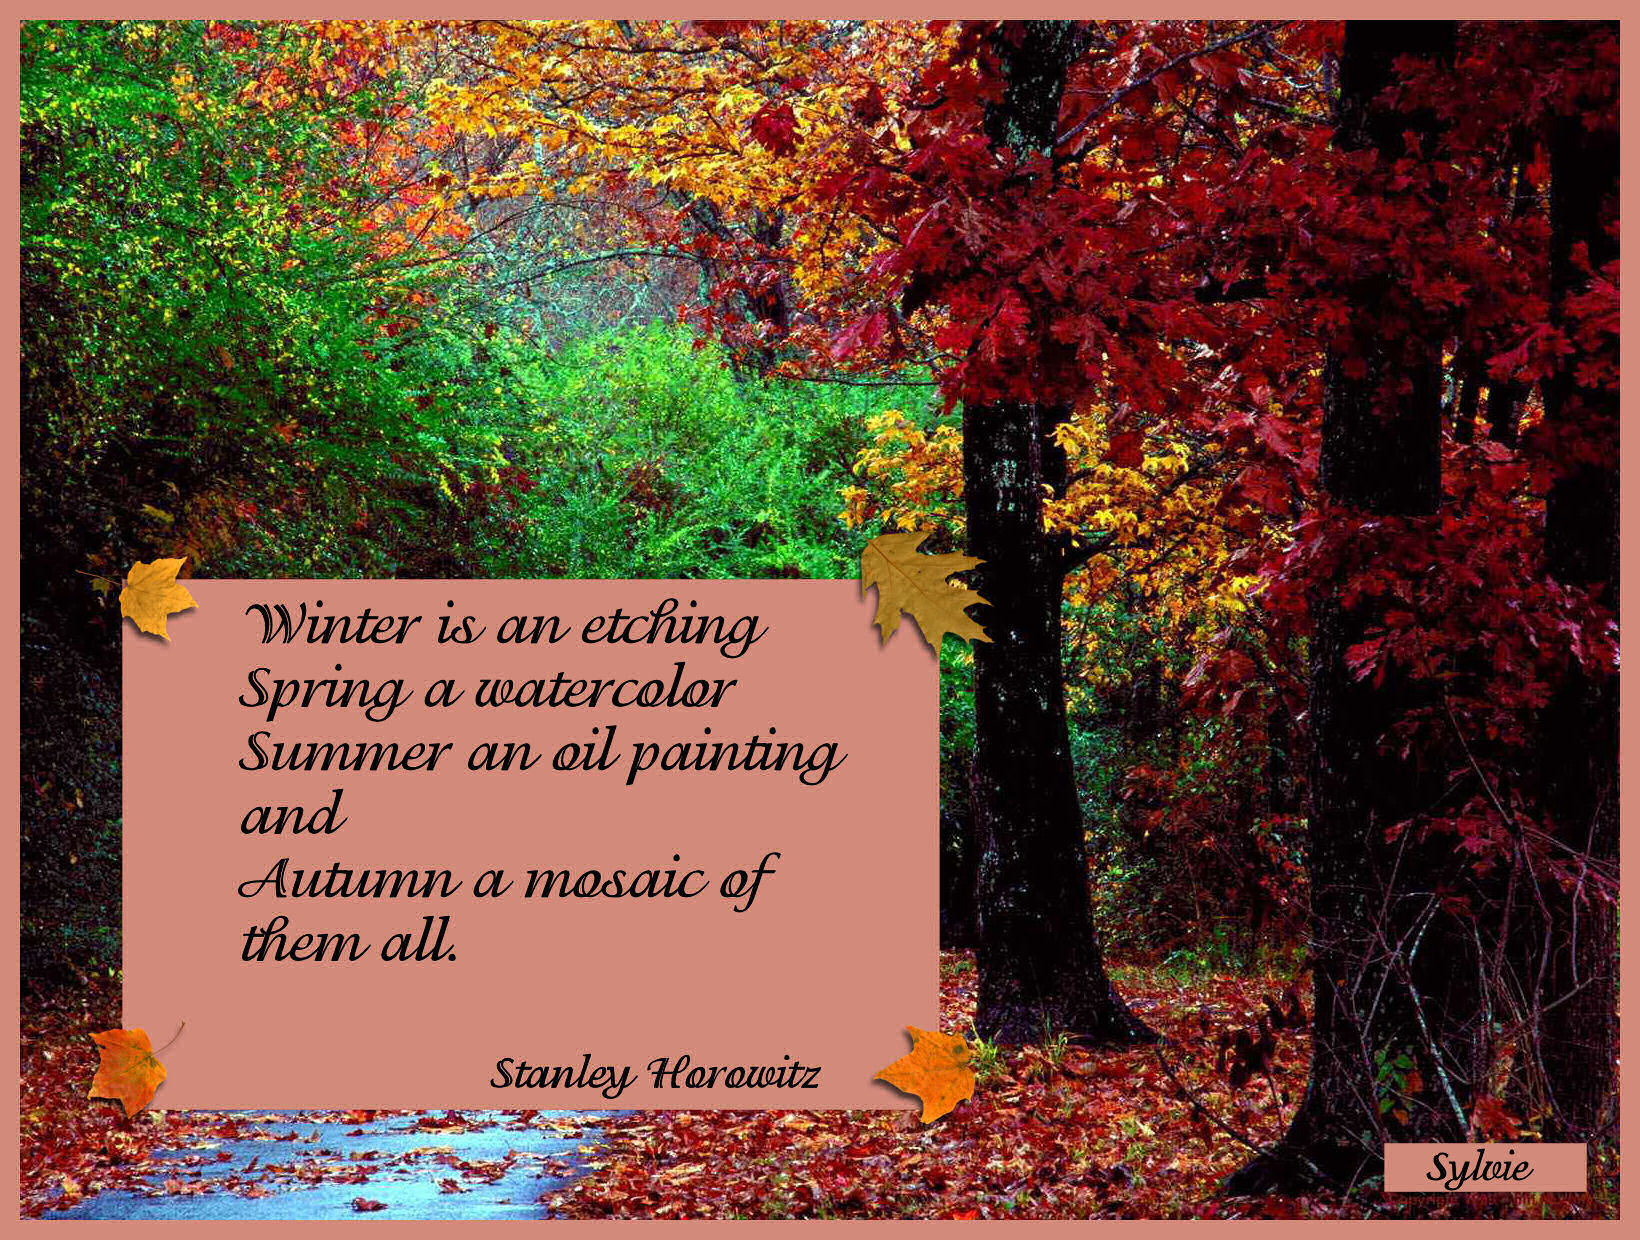 Autumn - Nature's Seasons Fan Art (9455604) - Fanpop